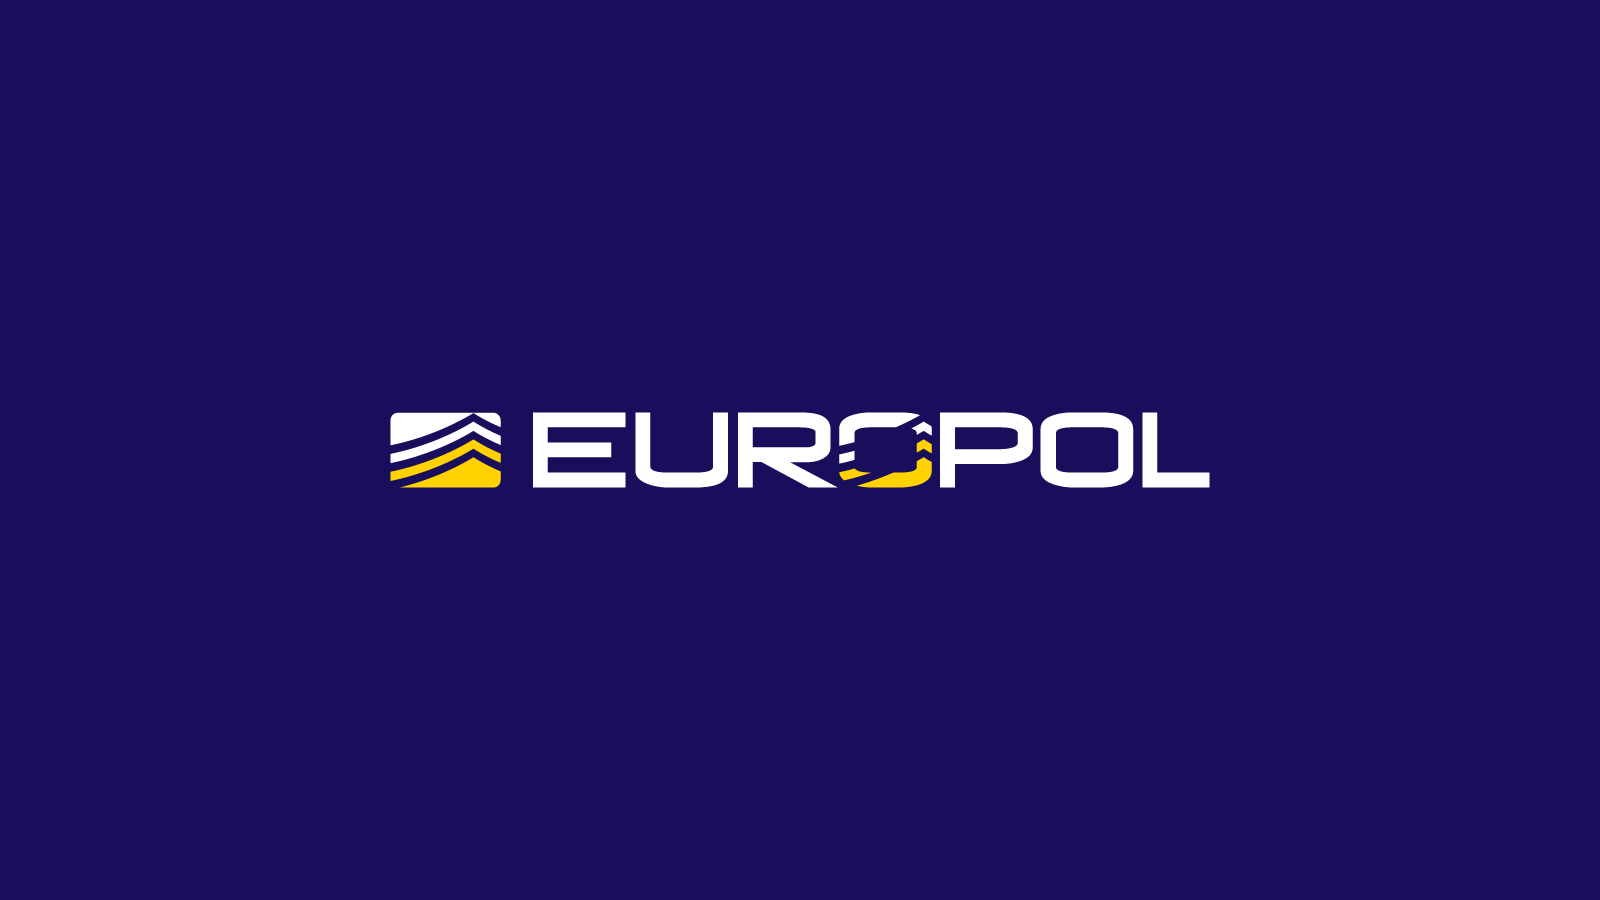 www.europol.europa.eu